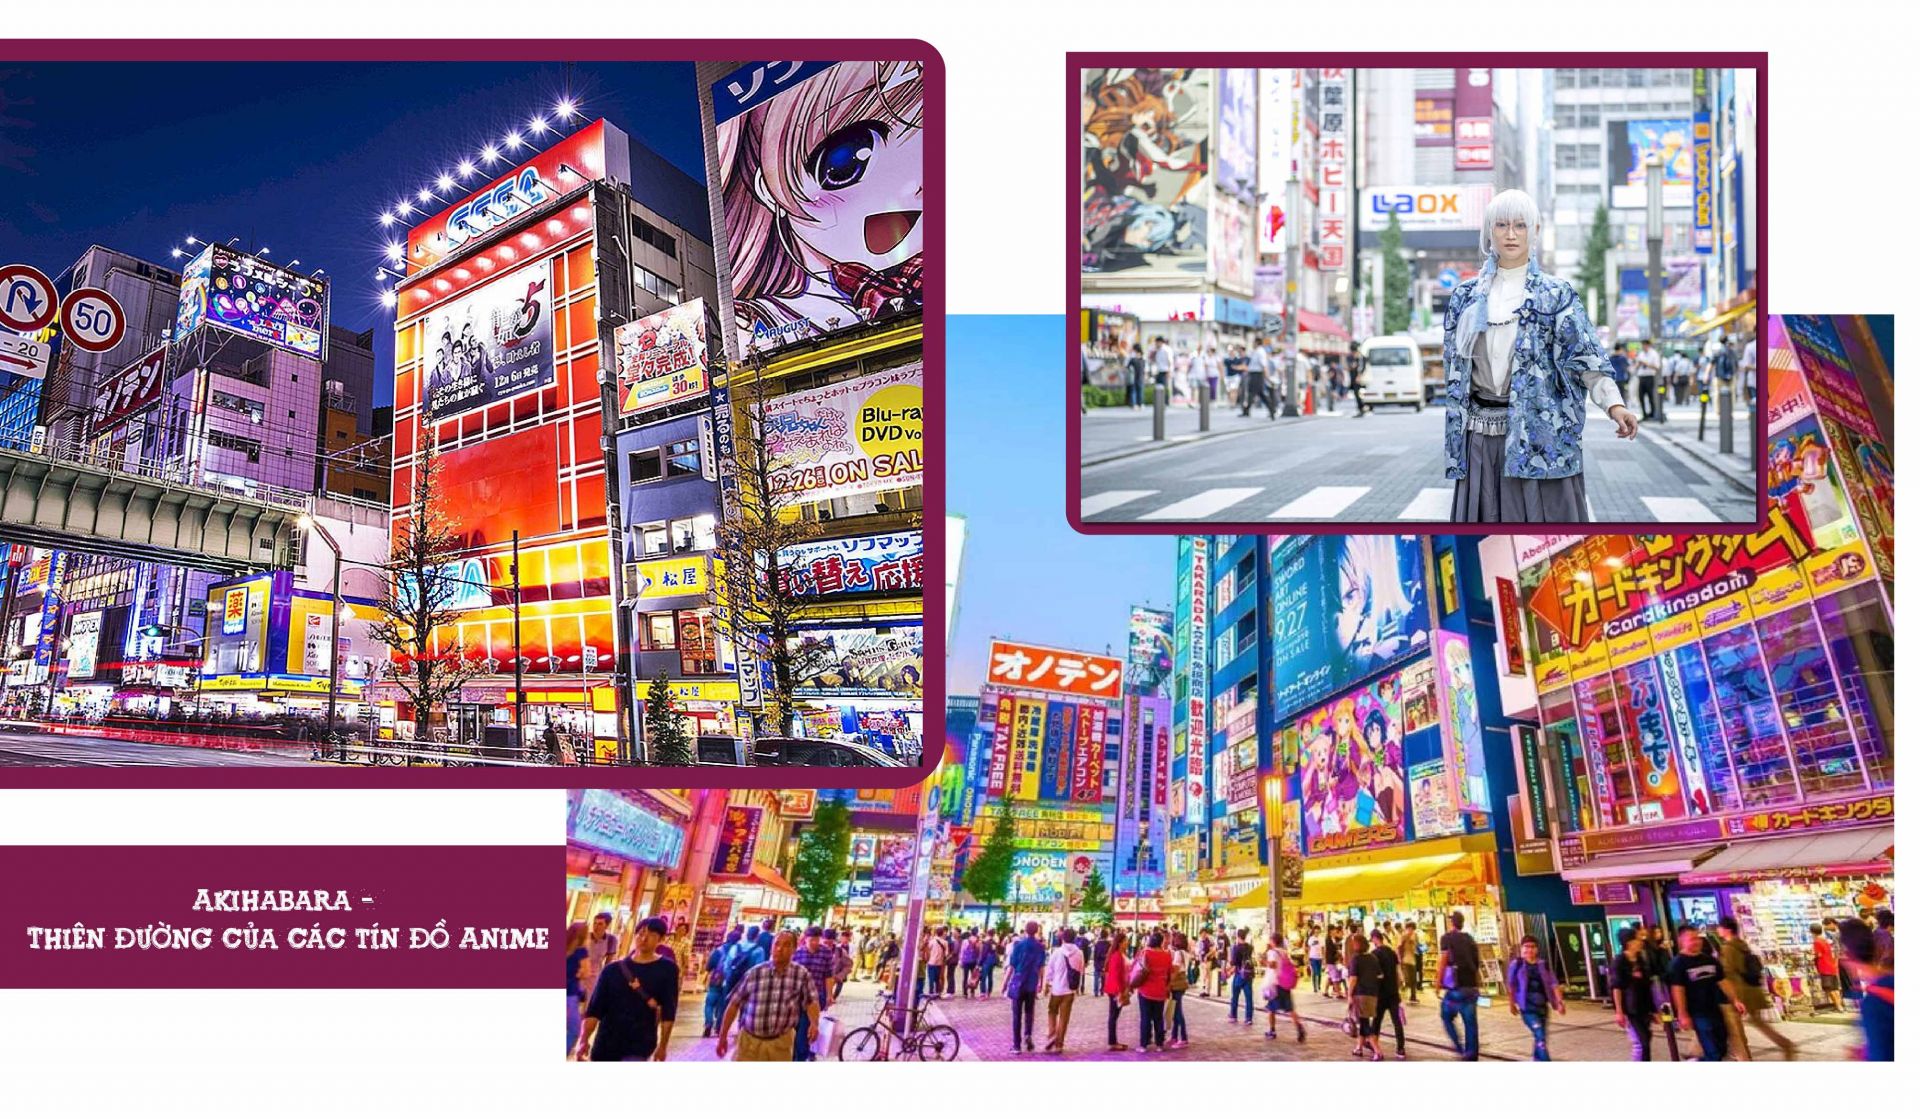 Hàng ngày, khu phố này luôn tấp nập du khách trong lẫn ngoài nước, ghé qua để tìm
kiếm những sản phẩm điện tử mới nhất cũng như các vật phẩm Otaku khó mà có được
ở nơi nào khác. Có thể nói, Akihabara là một trong các thiên đường mua sắm tại
Tokyo, có sự hòa hợp giữa văn hóa Otaku và khu phố đồ điện tử.
Trong thời đại ngày nay, văn hóa Anime càng phát triển mạnh mẽ hơn khi các ngày hội
Anime bắt đầu diễn ra. Các ngày hội Anime có thể diễn ra trong vài ngày, thu hút đông
đảo của những người hâm mộ Anime và Manga muốn thể hiện niềm đam mê và sự
cống hiến của mình cho Anime. Nếu có dịp hãy cùng chìm đắm trong nét văn hóa
Anime đẹp đẽ này qua các lễ hội nhé, nó hứa hẹn sẽ đem lại cho bạn những trải
nghiệm khó quên trong đời này!